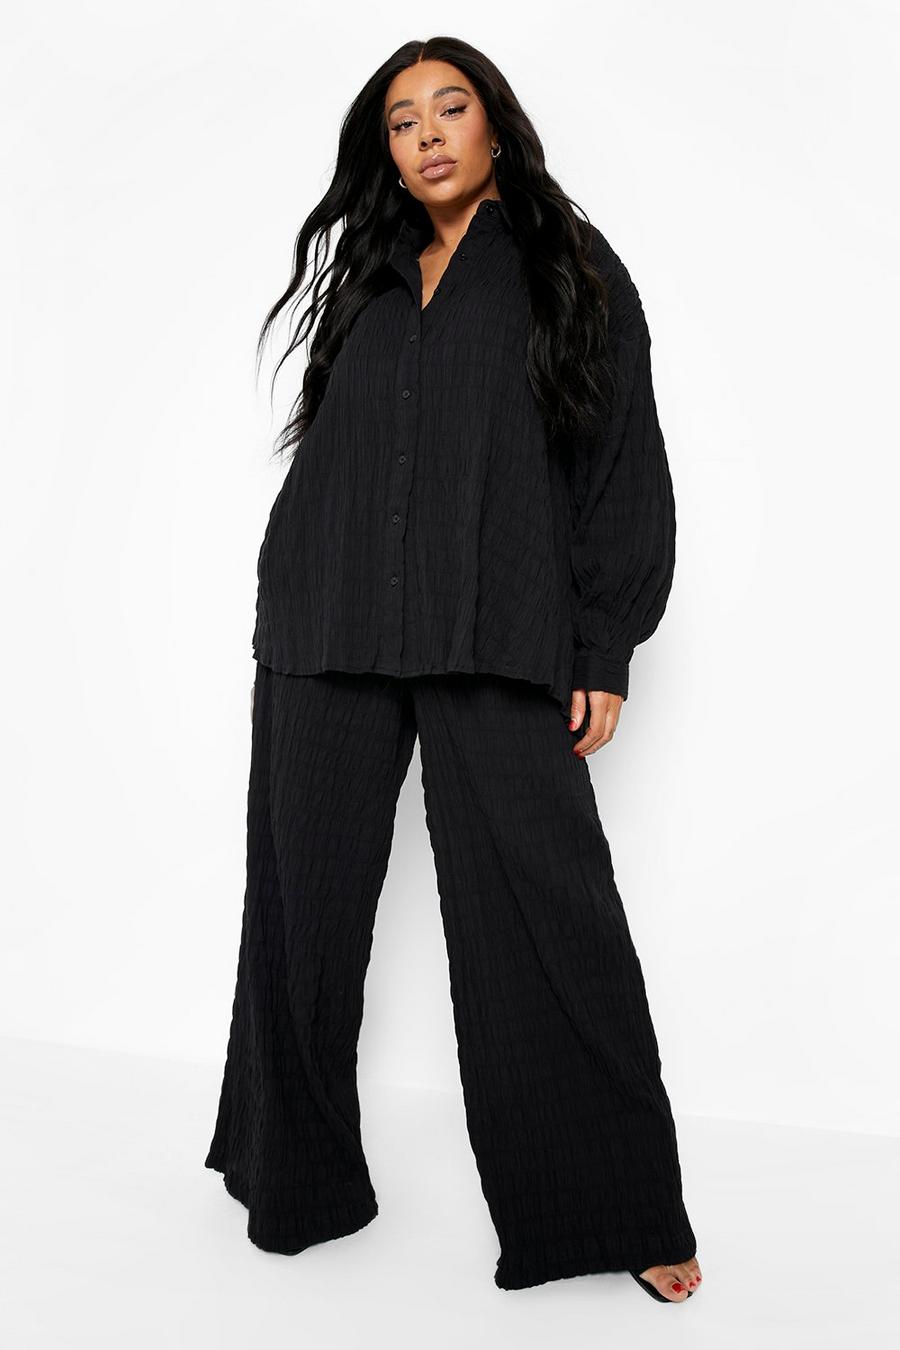 Camicia Plus Size effetto goffrato & pantaloni coordinati, Black nero